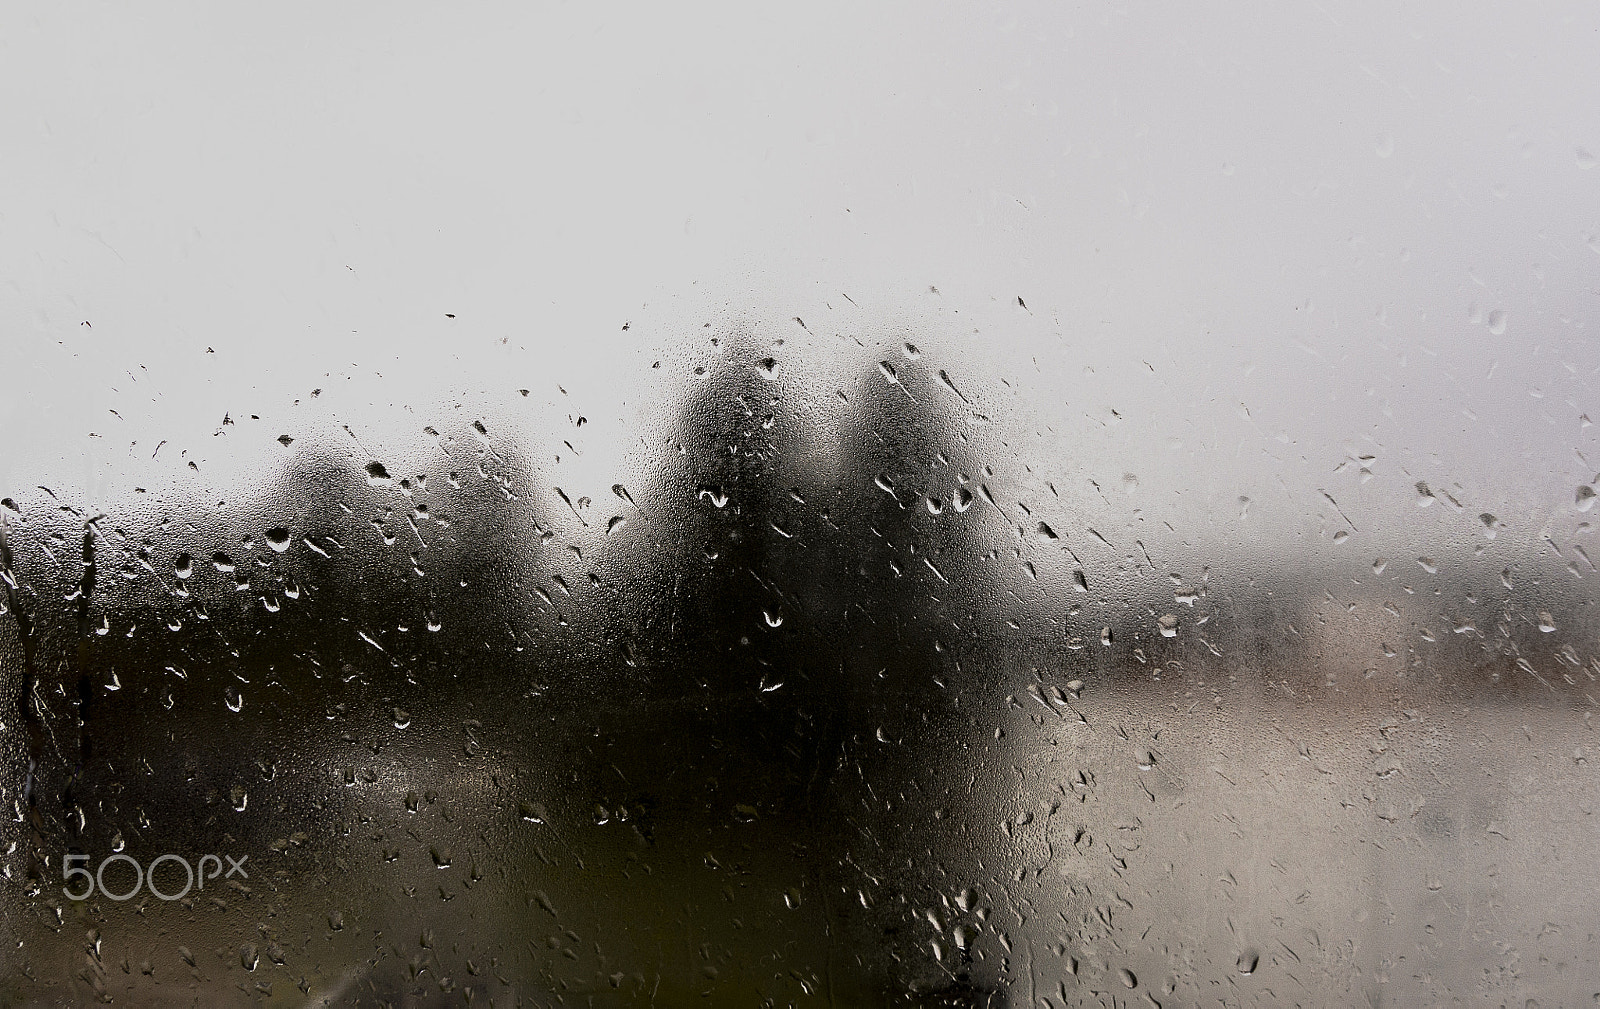 Sony Alpha DSLR-A500 sample photo. Rain on windows photography